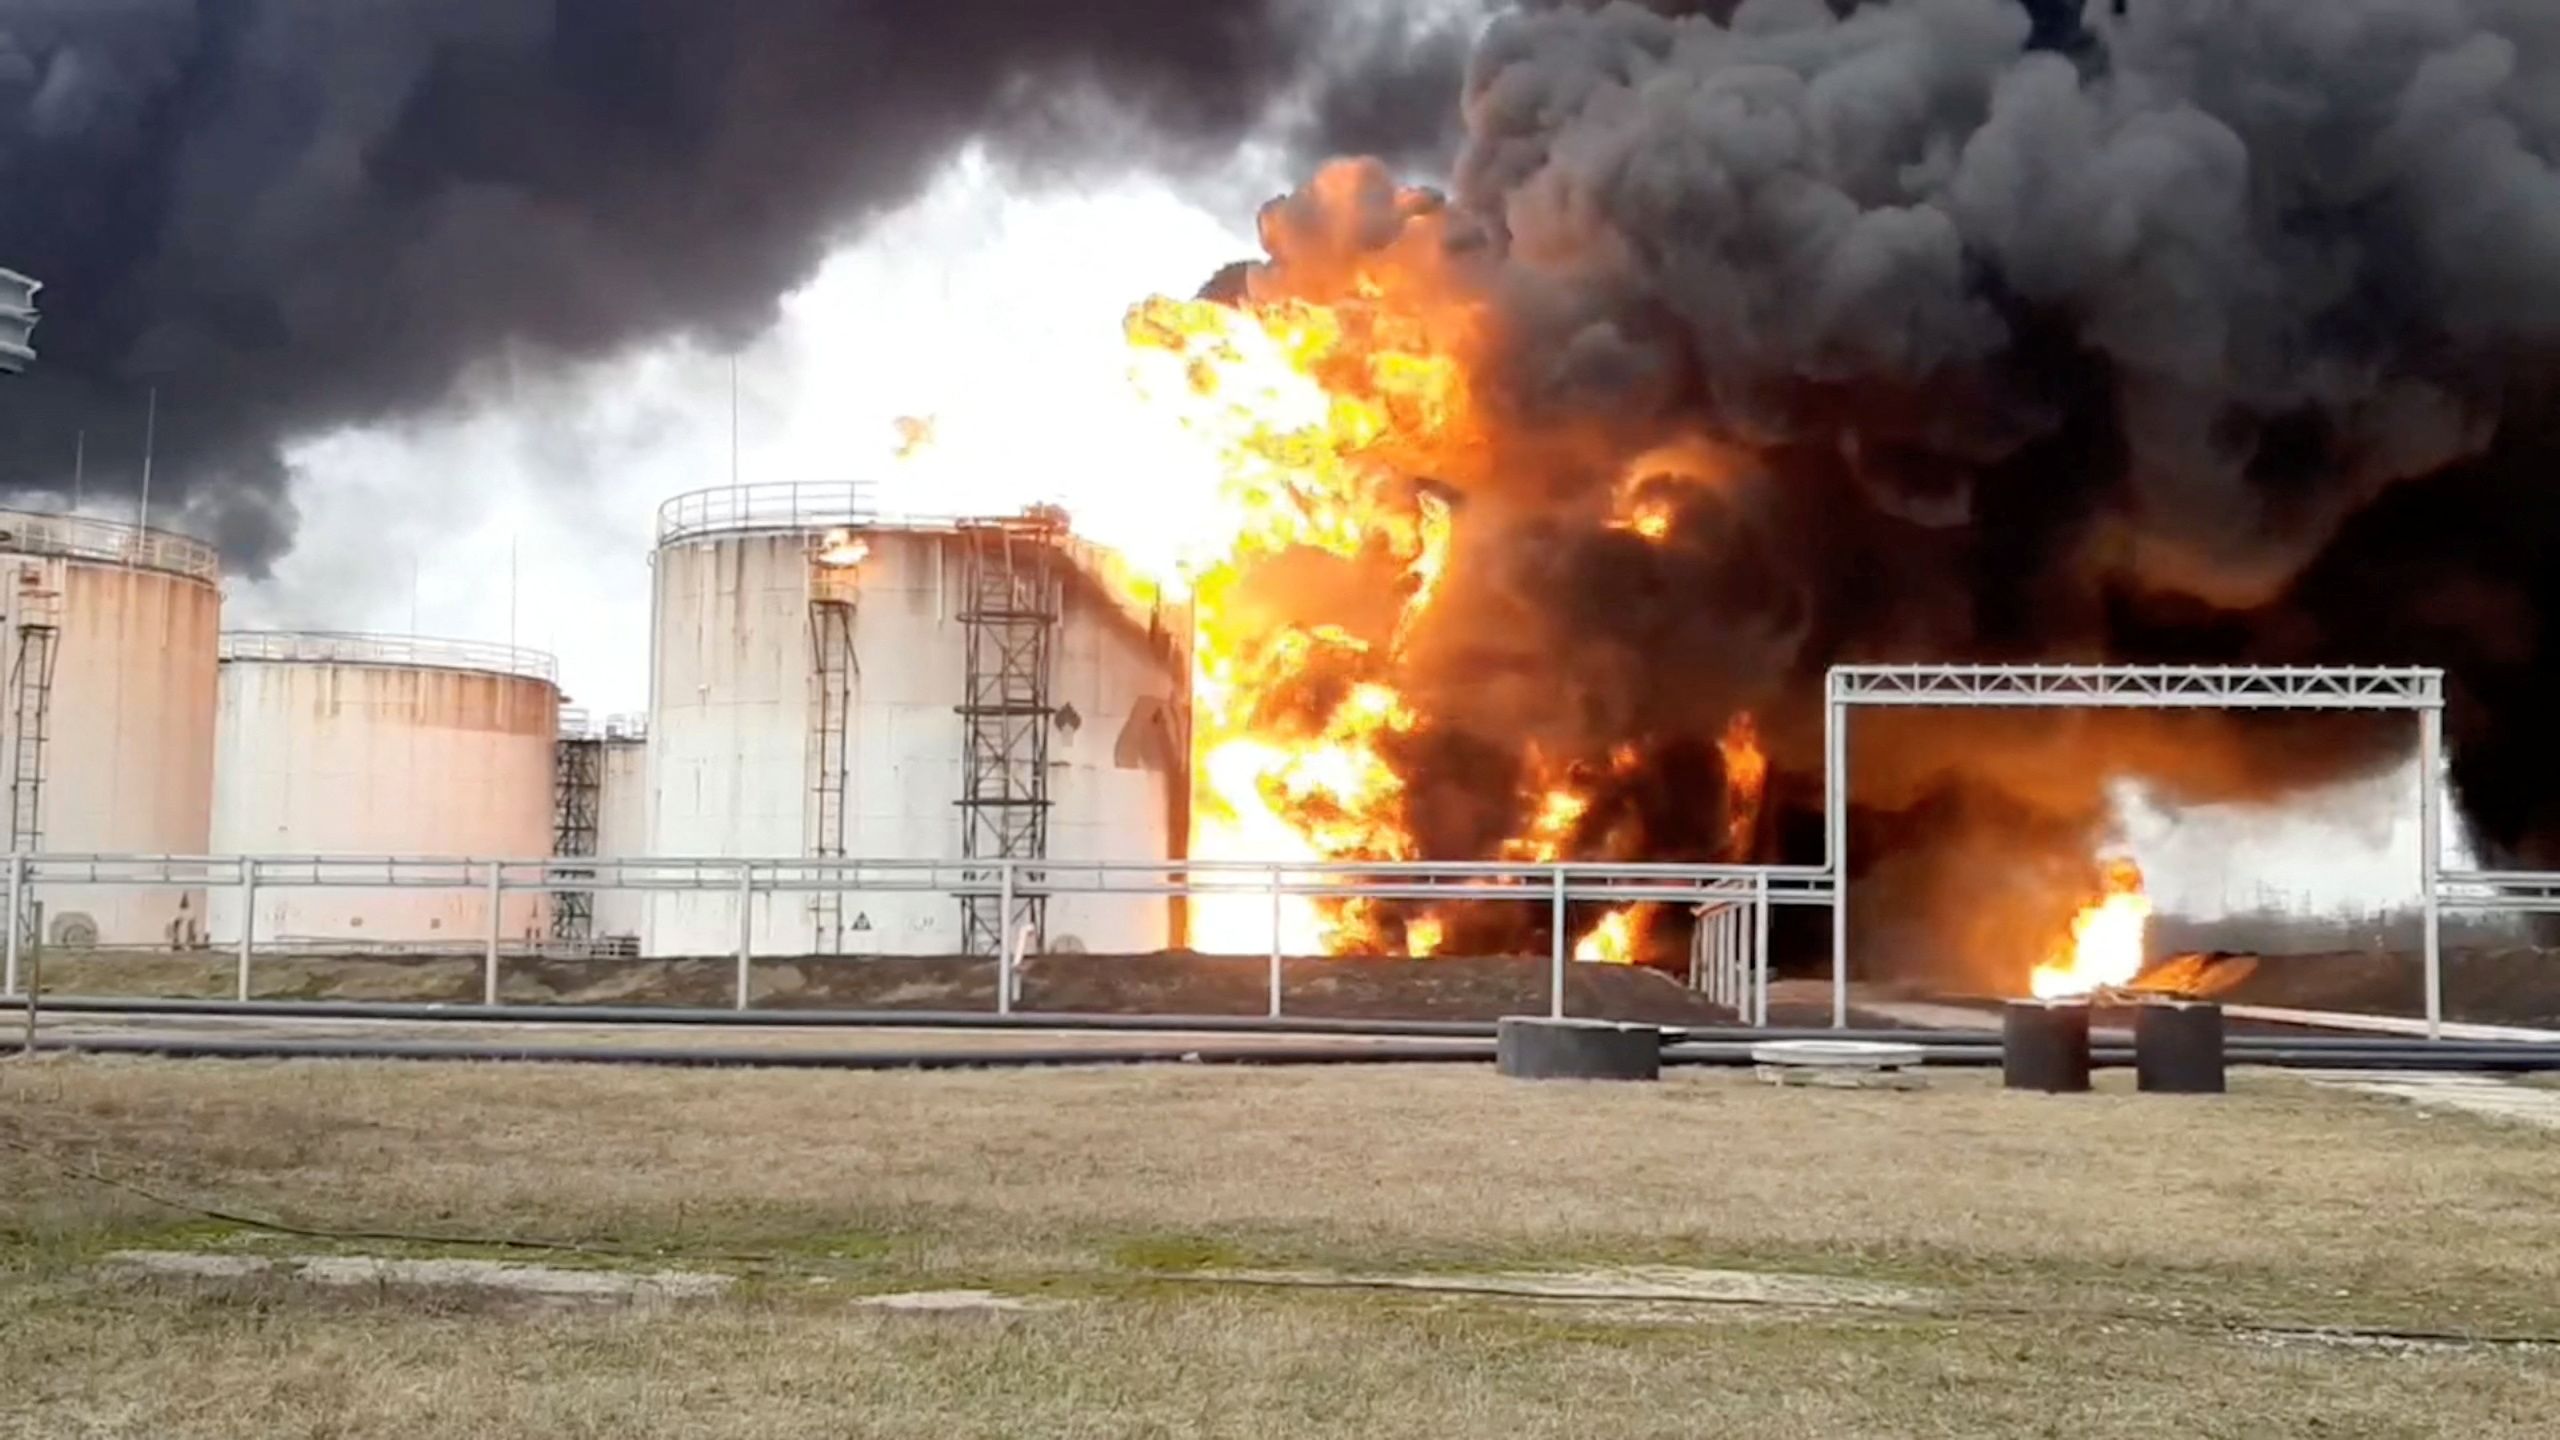 Ουκρανική δολιοφθορά σε δεξαμενές πετρελαίου στις ρωσικές περιοχές του Μπριάνσκ, του Κουρσκ και του Μπέλγκοροντ